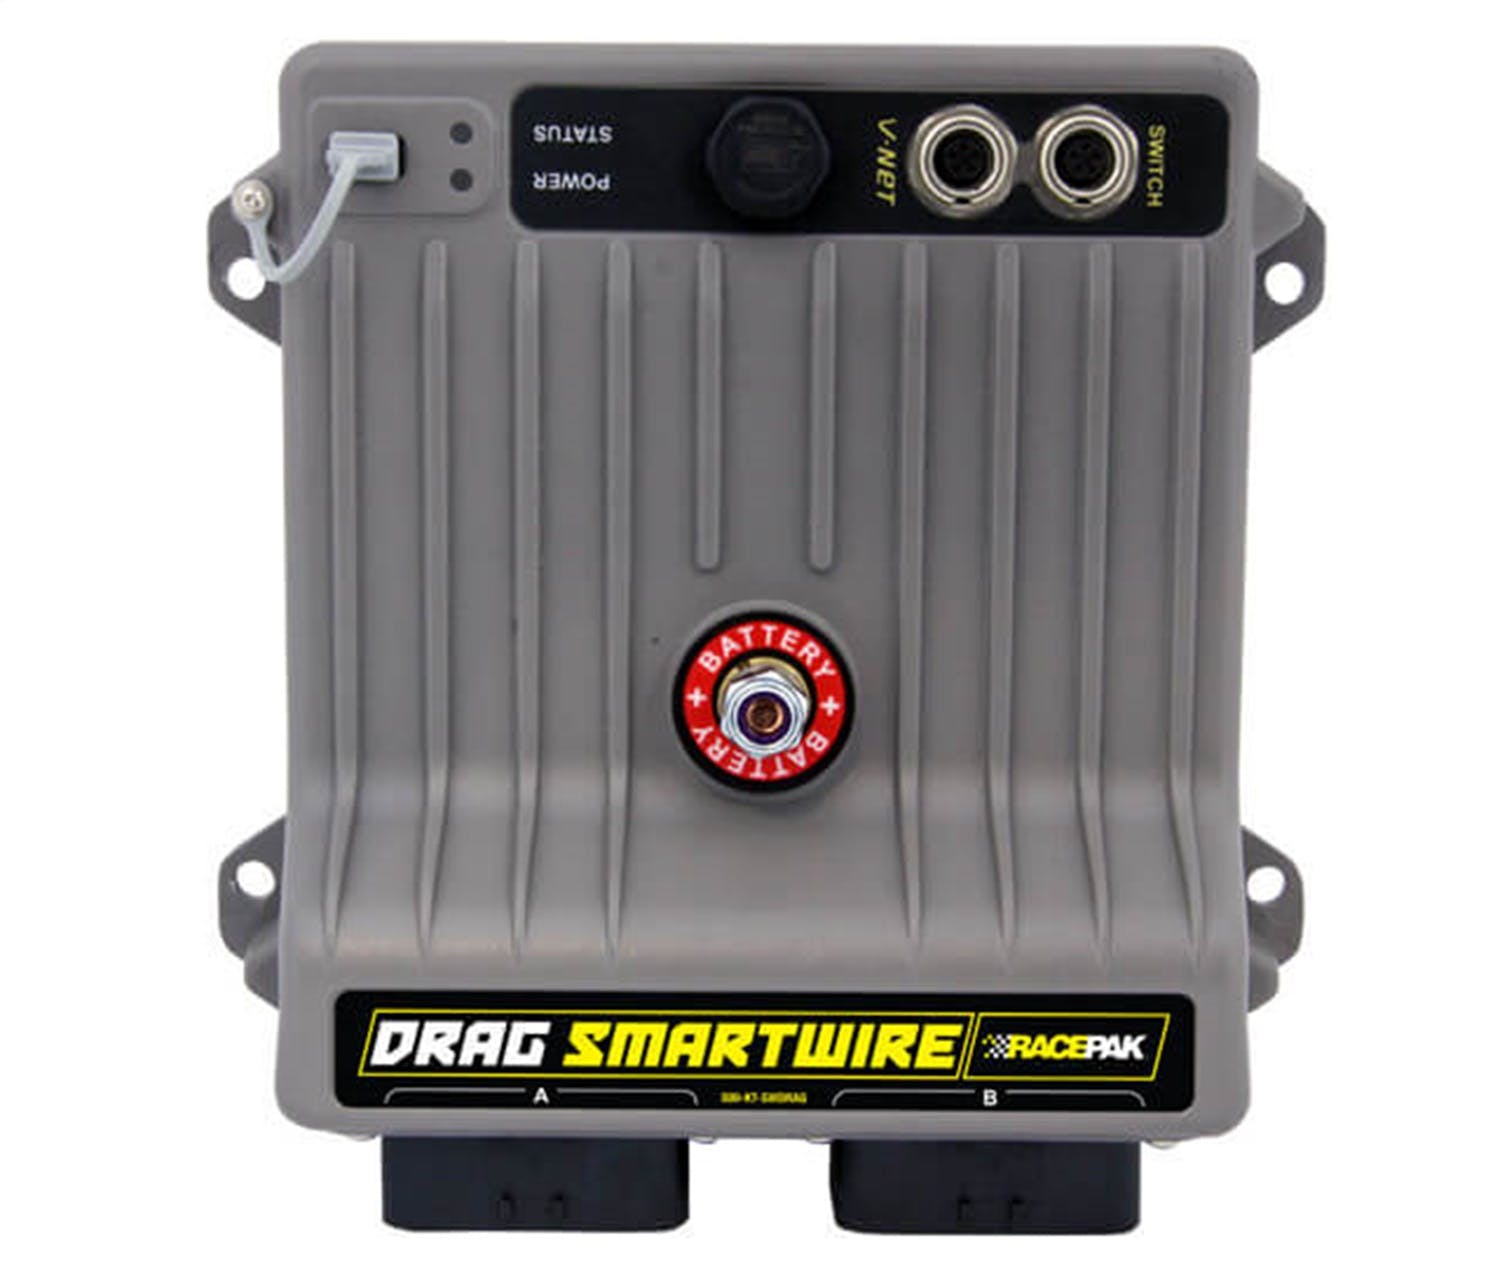 Racepak 500-KT-SWDRAGK8 K8 Drag SmartWire Power Control Module